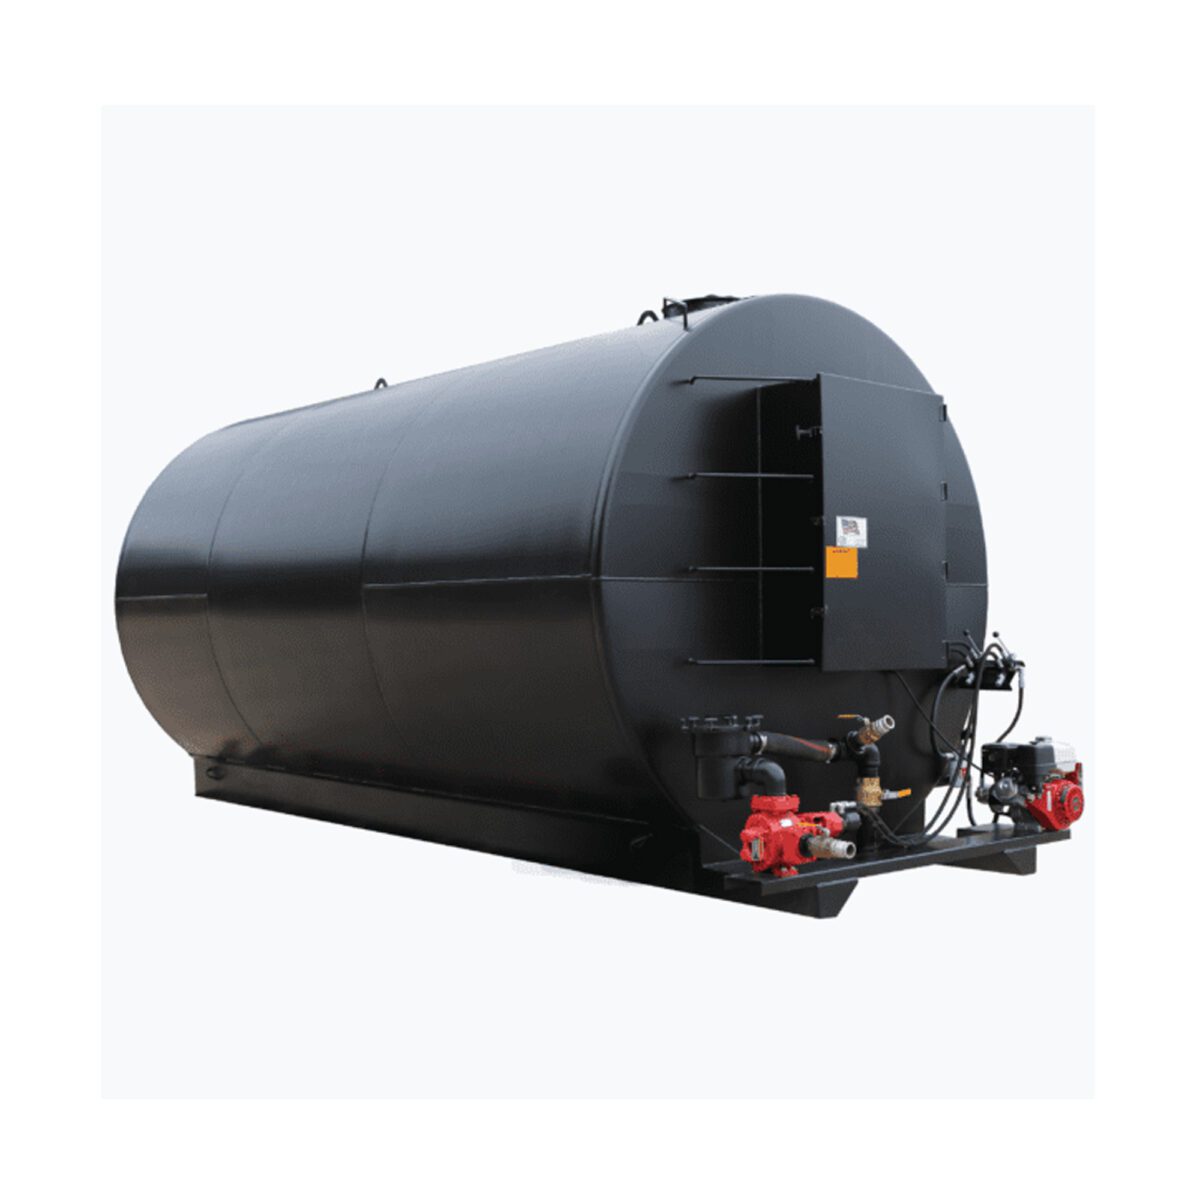 8,000-gallon bulk storage tank